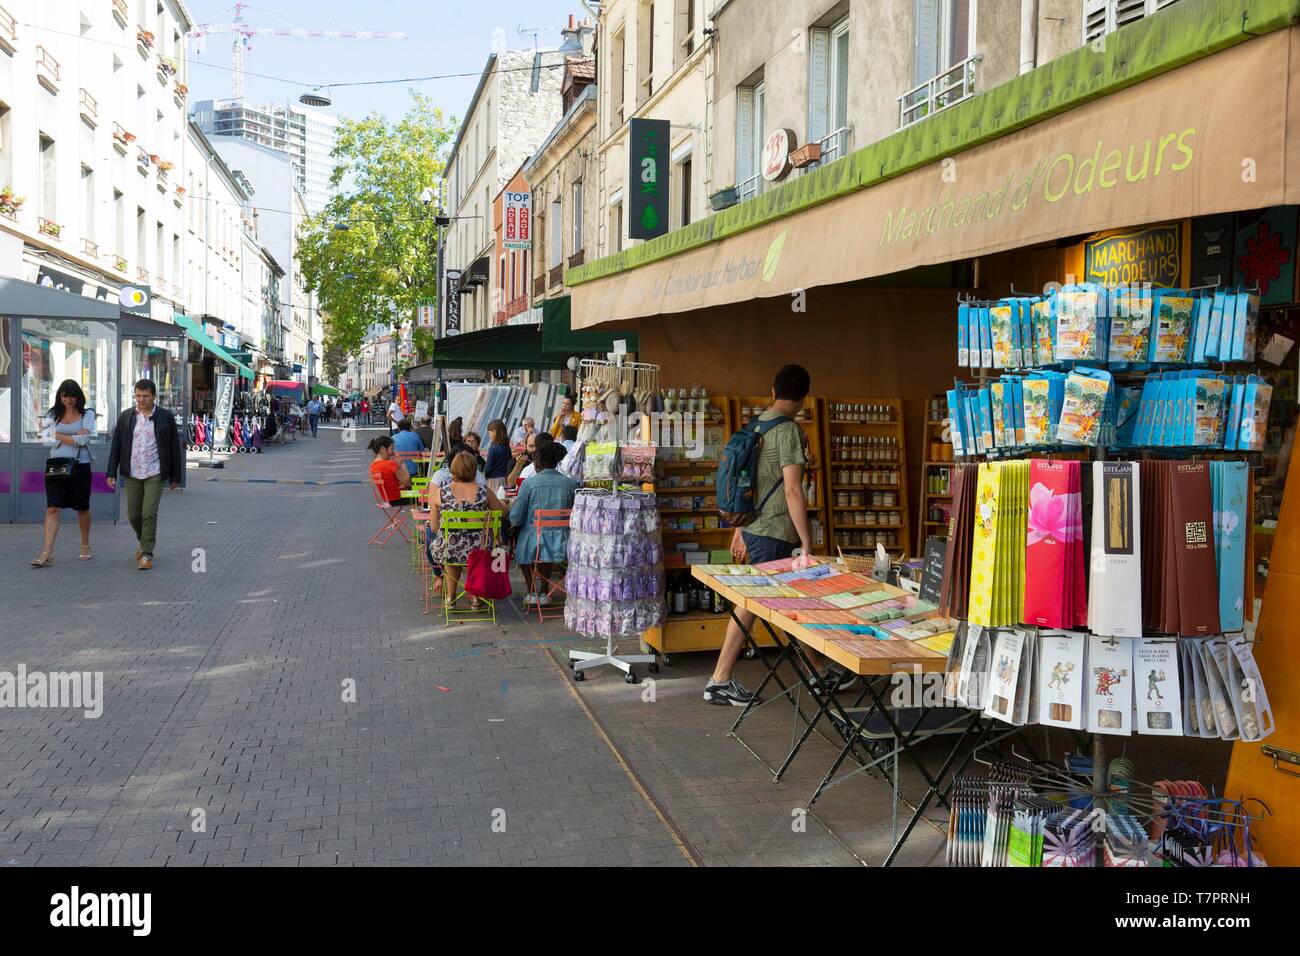 France, Seine Saint Denis, Montreuil, the pedestrian boulevard Rouget de Lisle Stock Photo